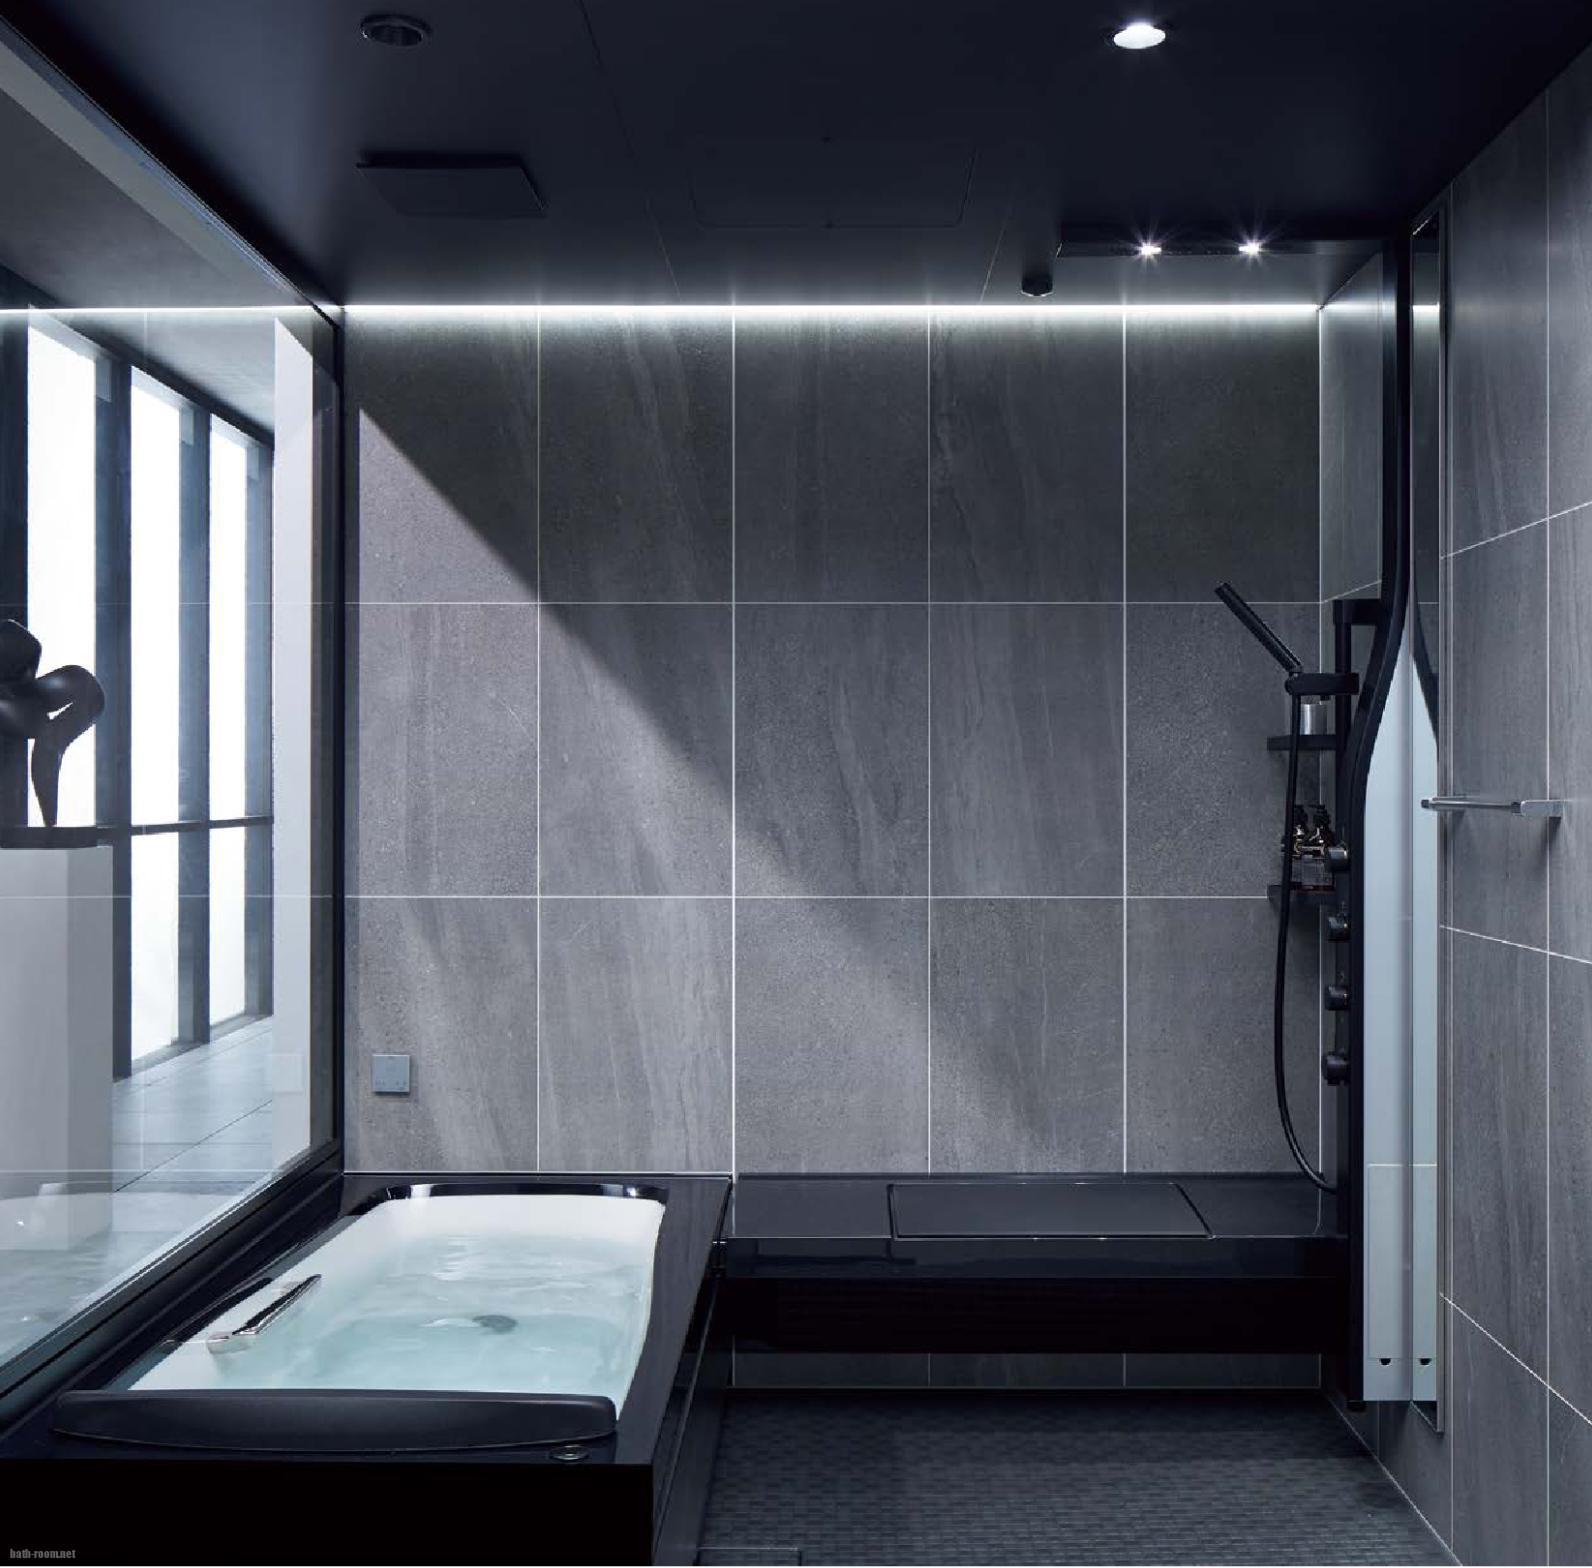 戸建・マンション用システムバスルームSPAGE | 浴室リフォームPRO